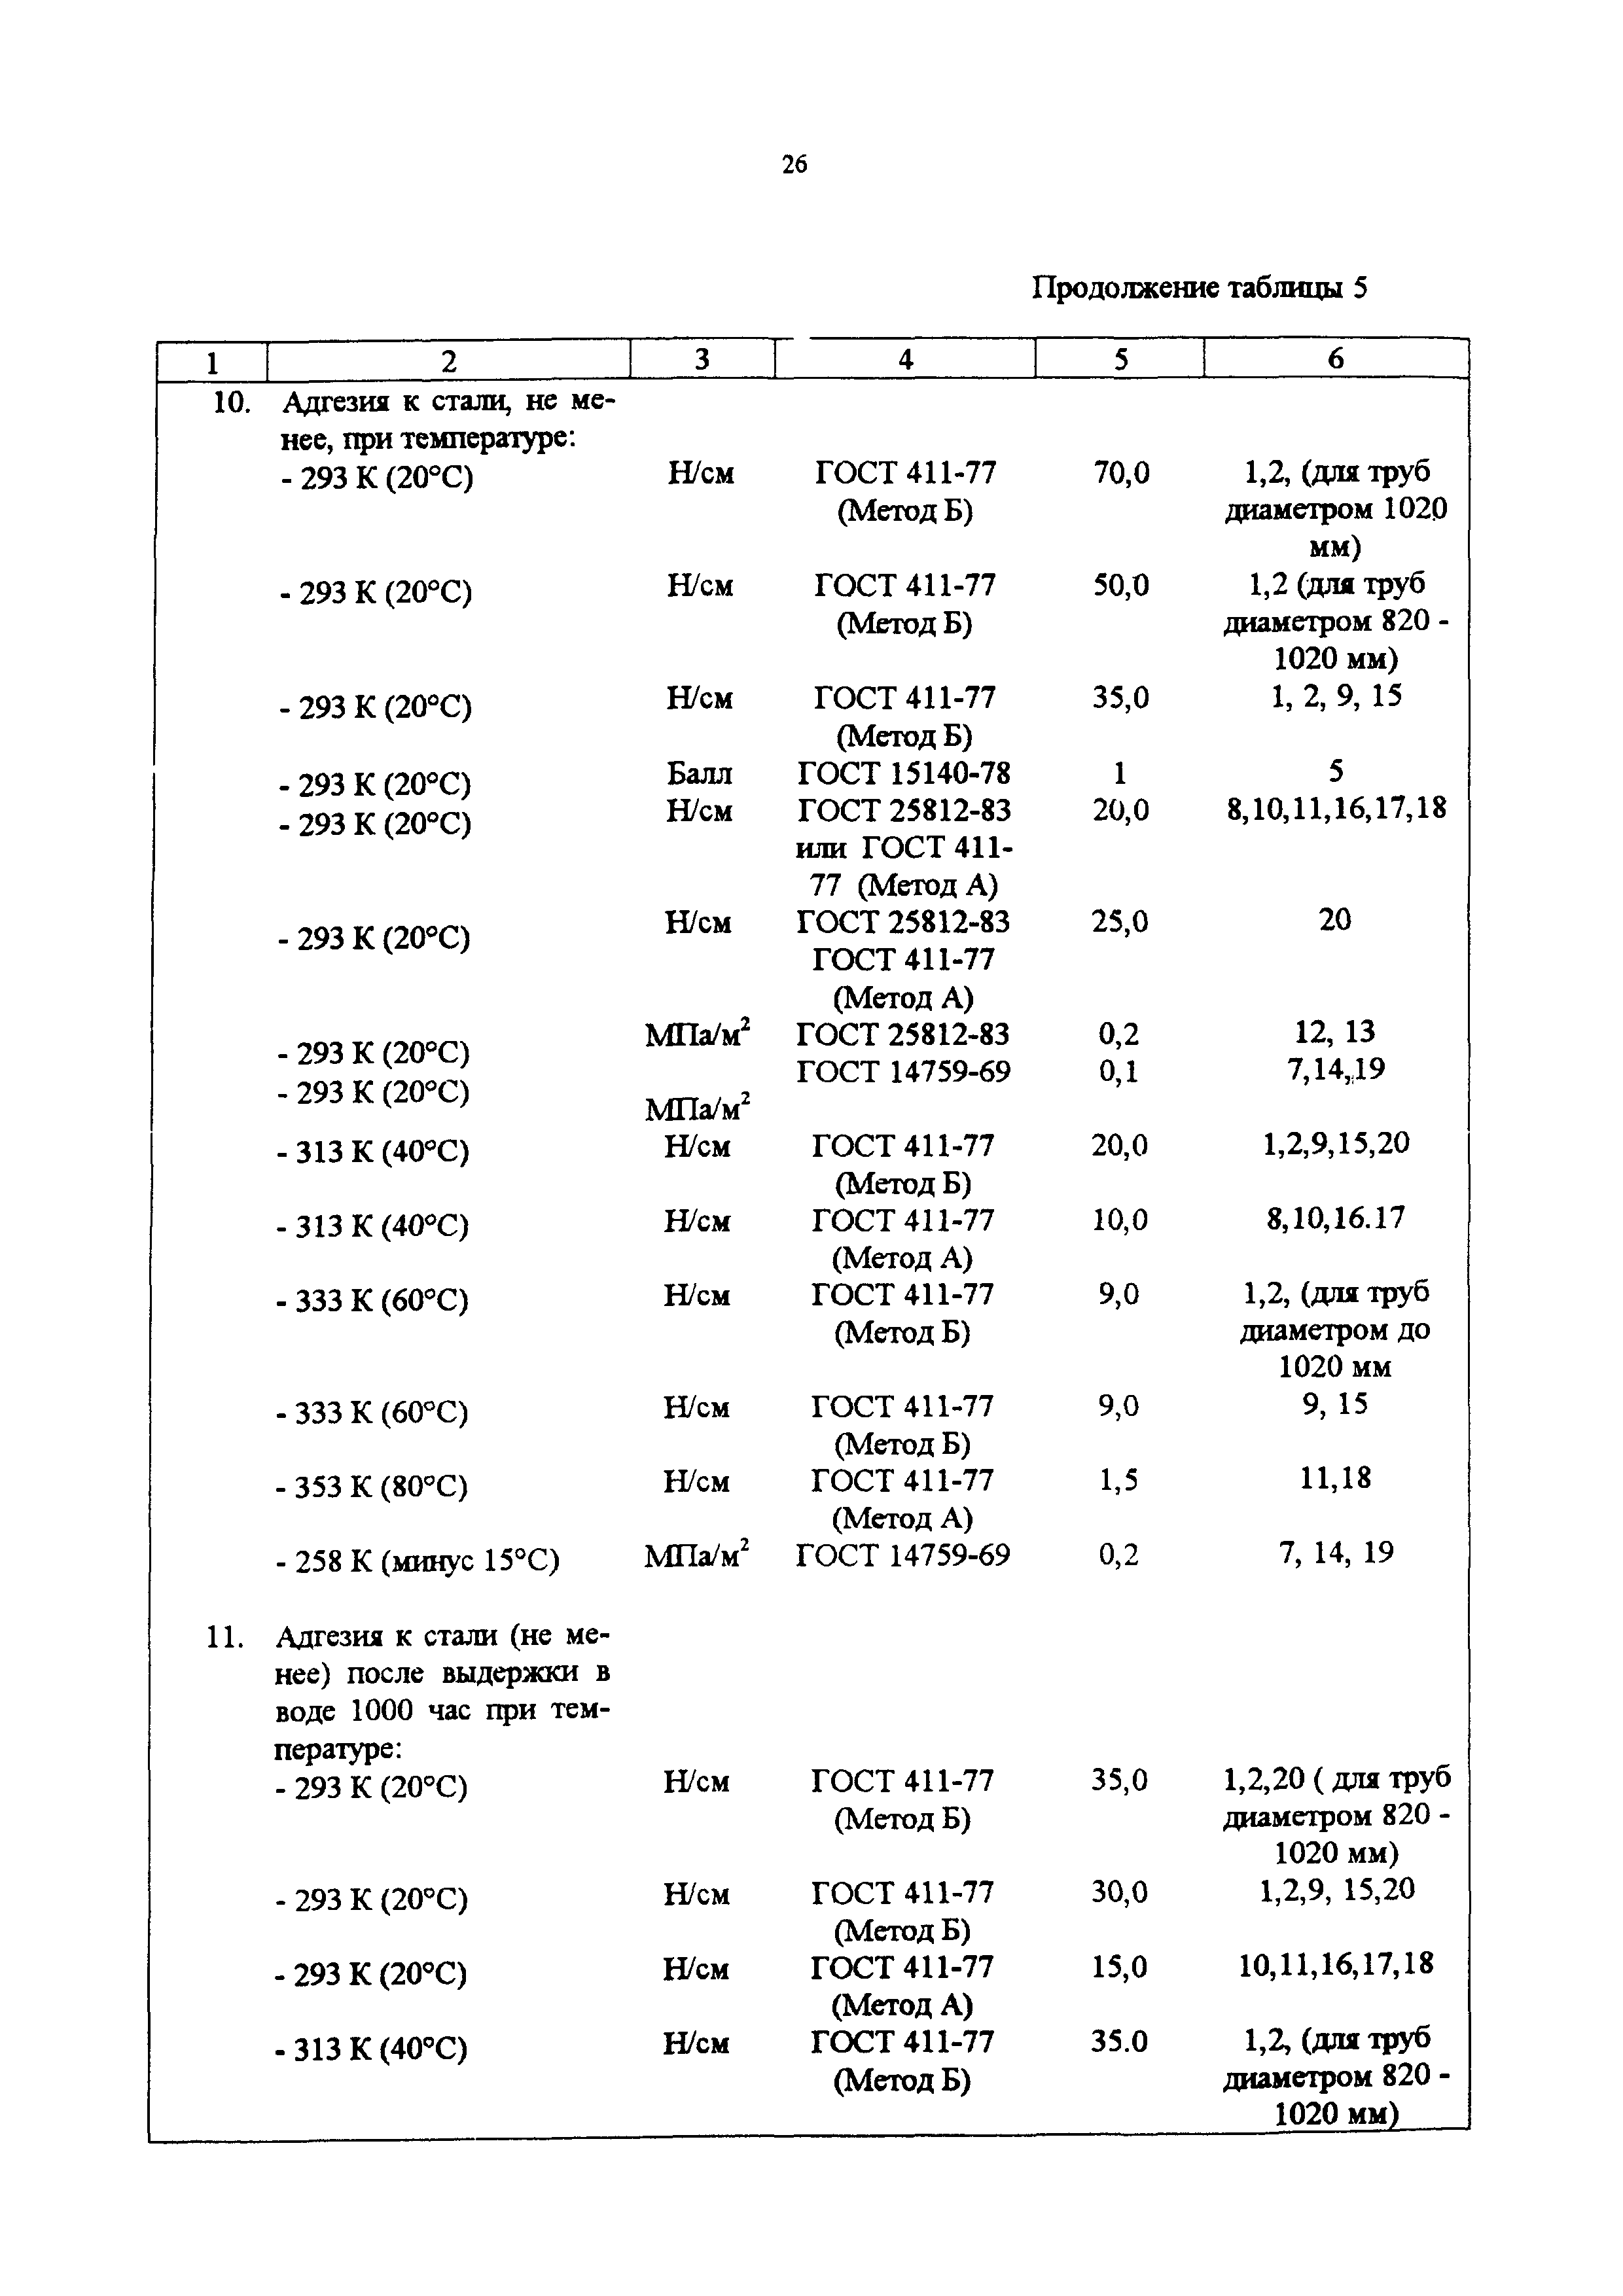 СП 34-116-97